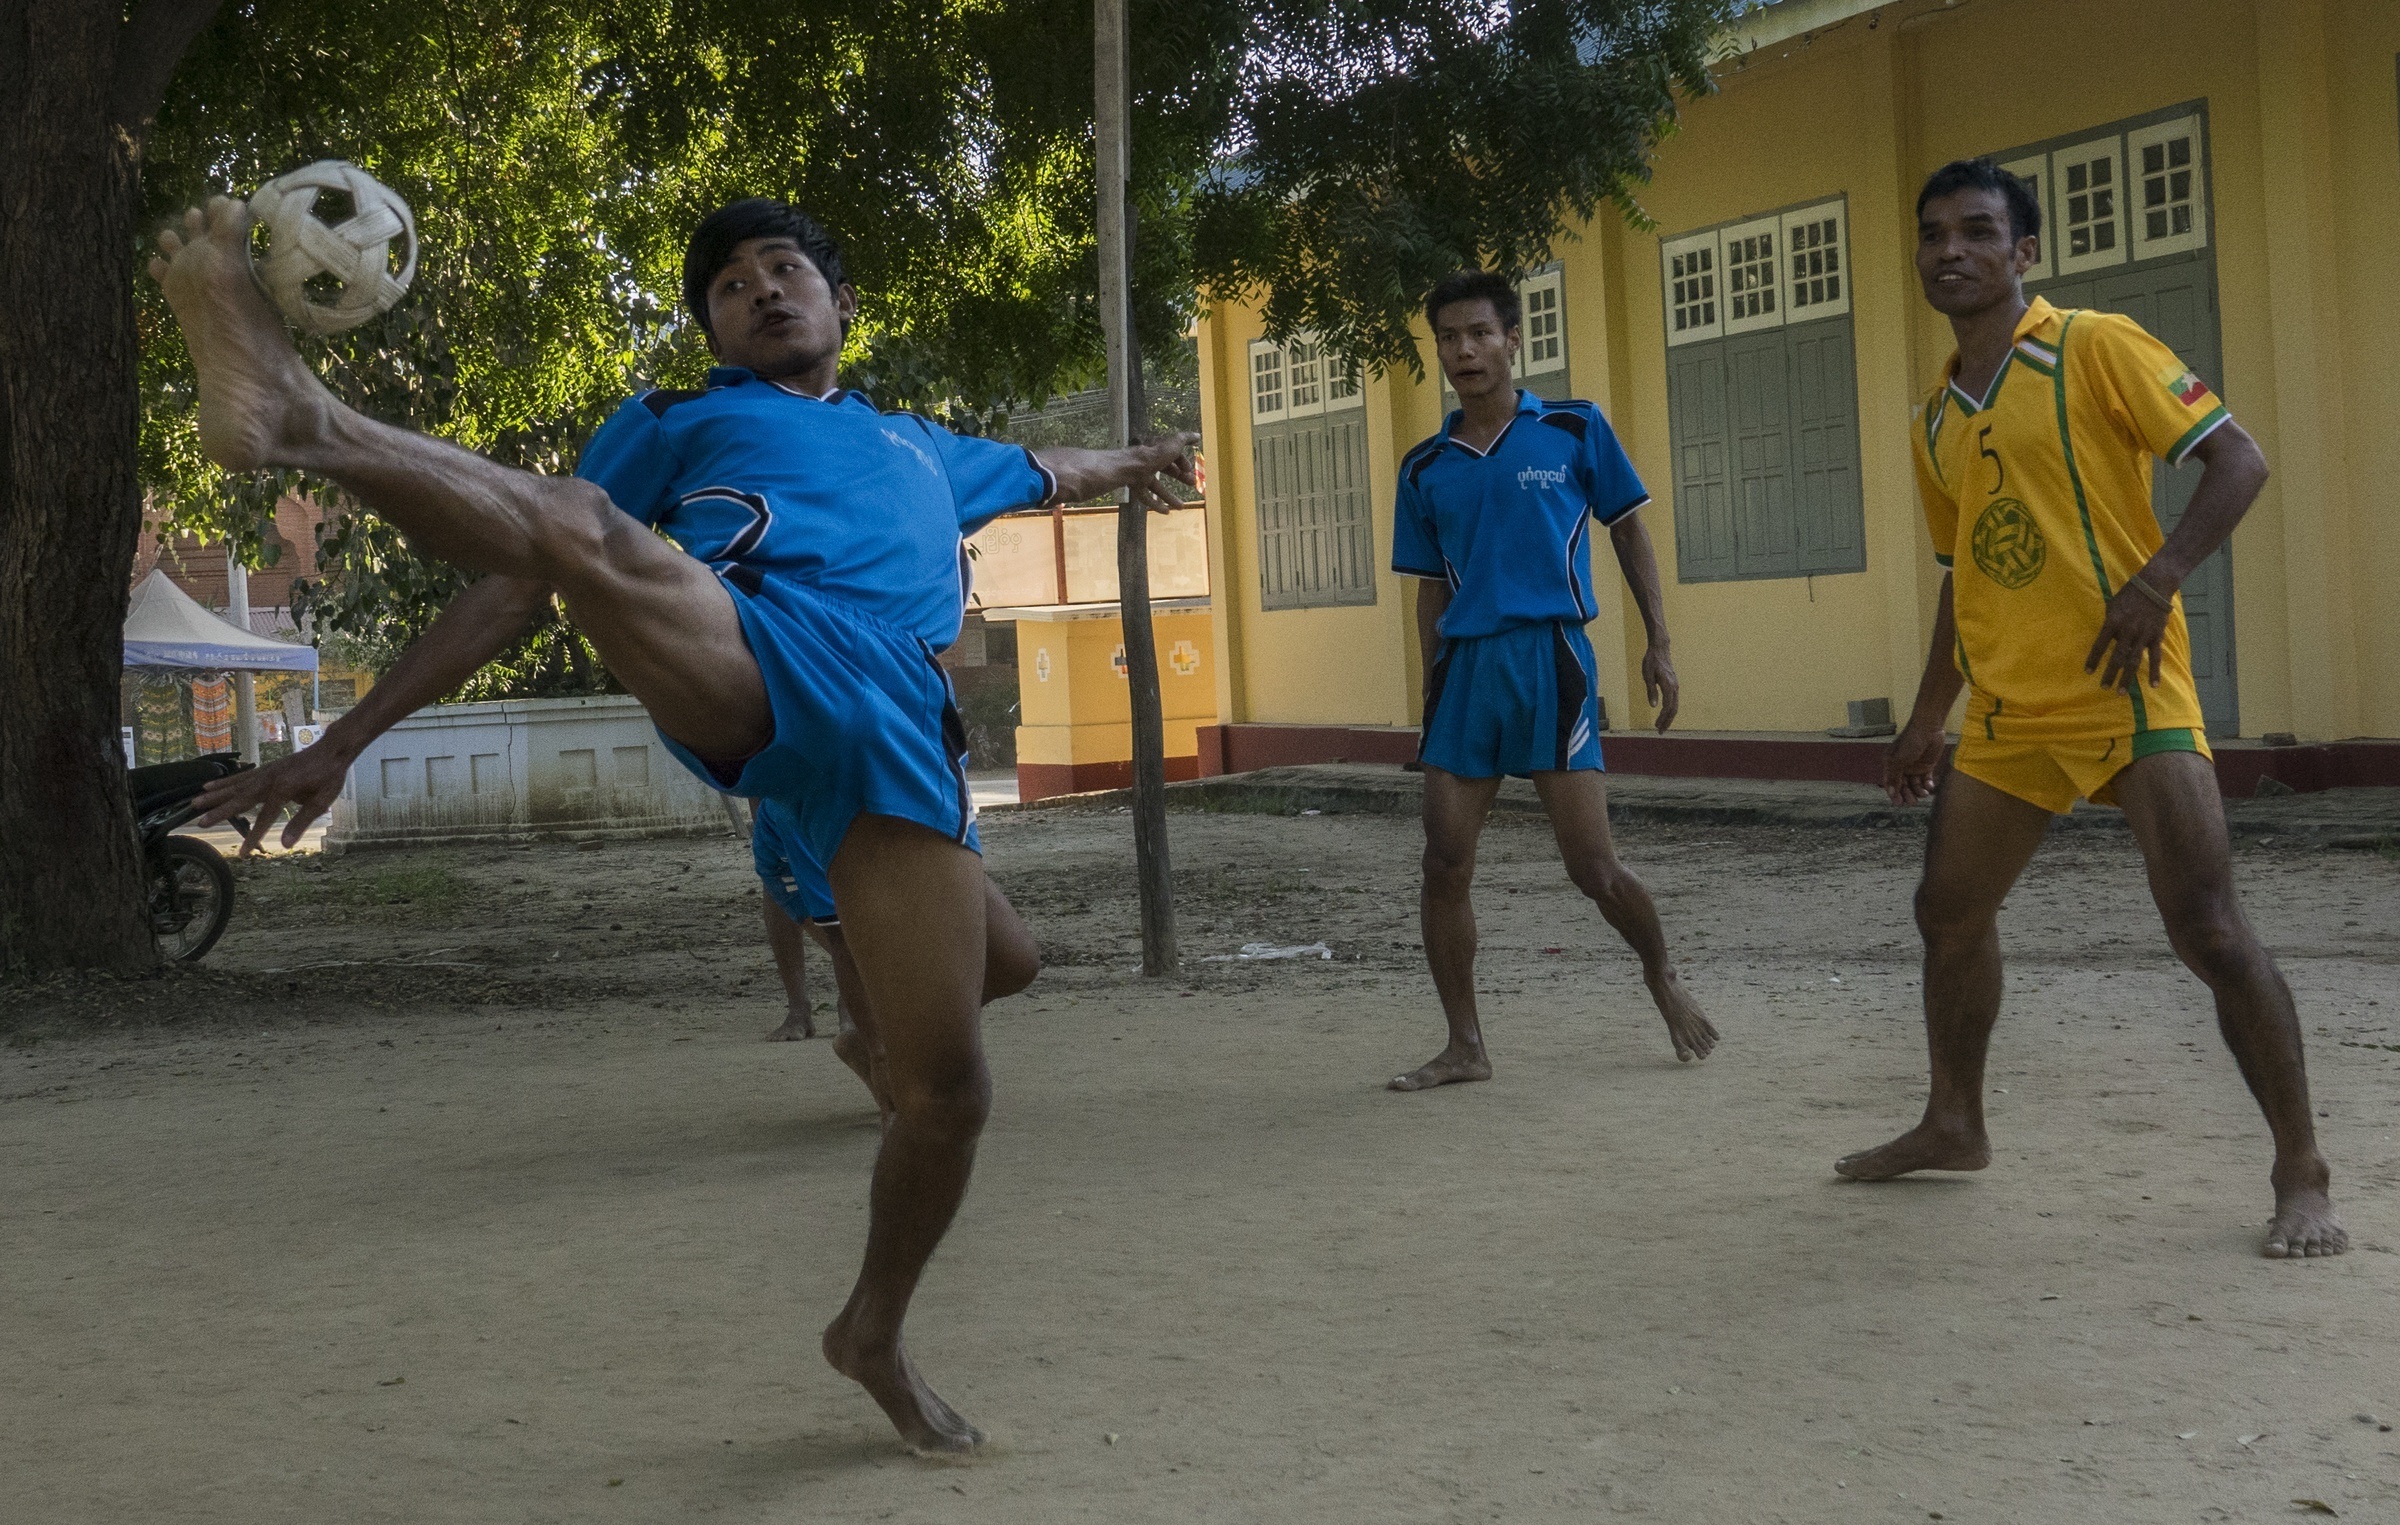 Men playing chinlone in Burma